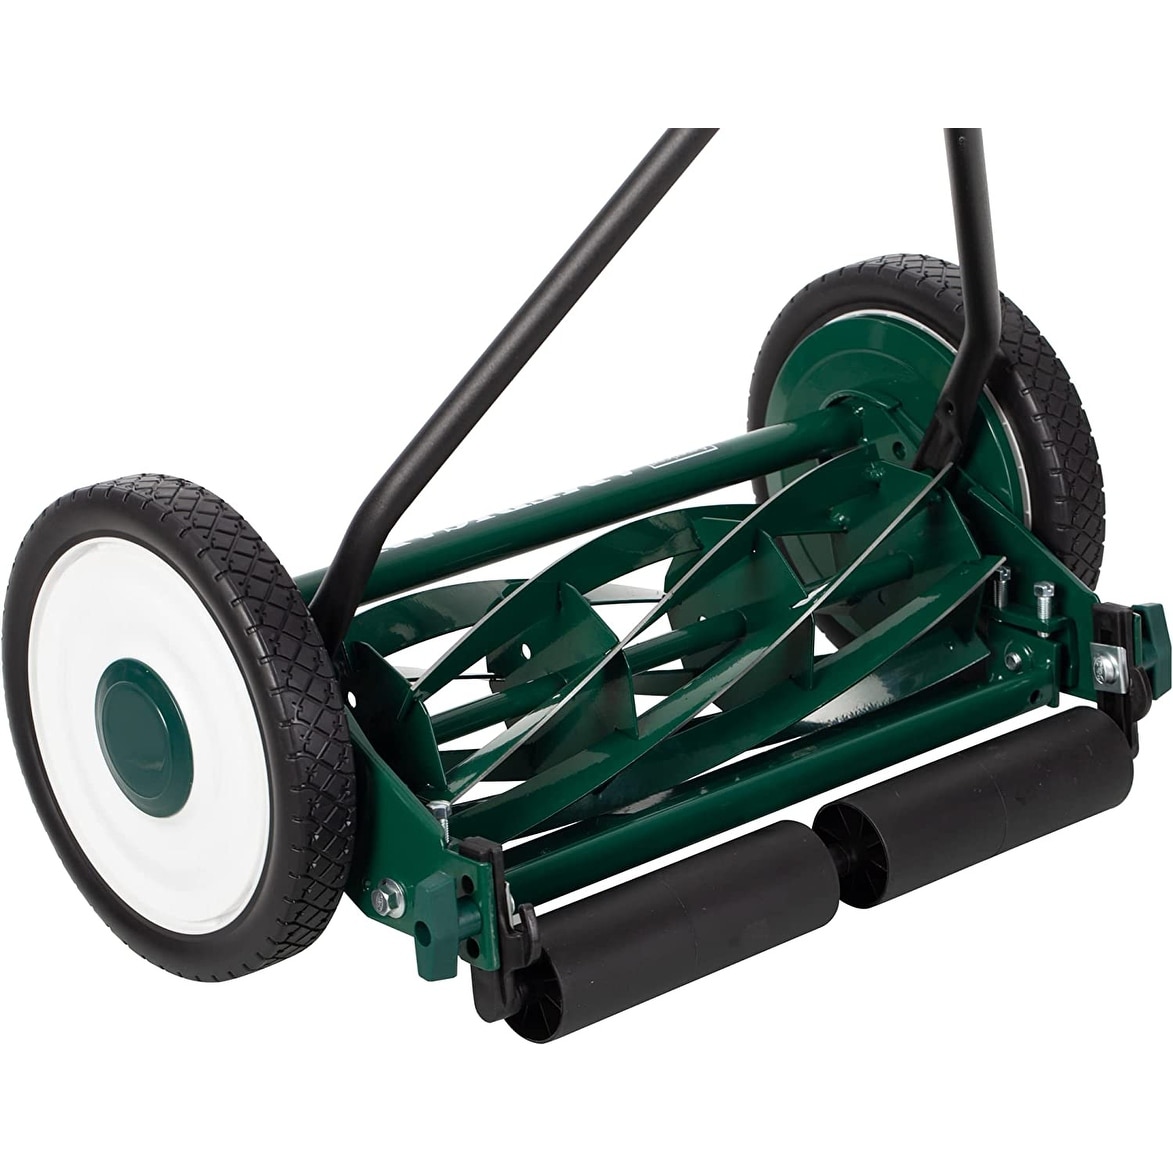 American Lawn Mower 16 Manual Reel Mower – American Lawn Mower Co